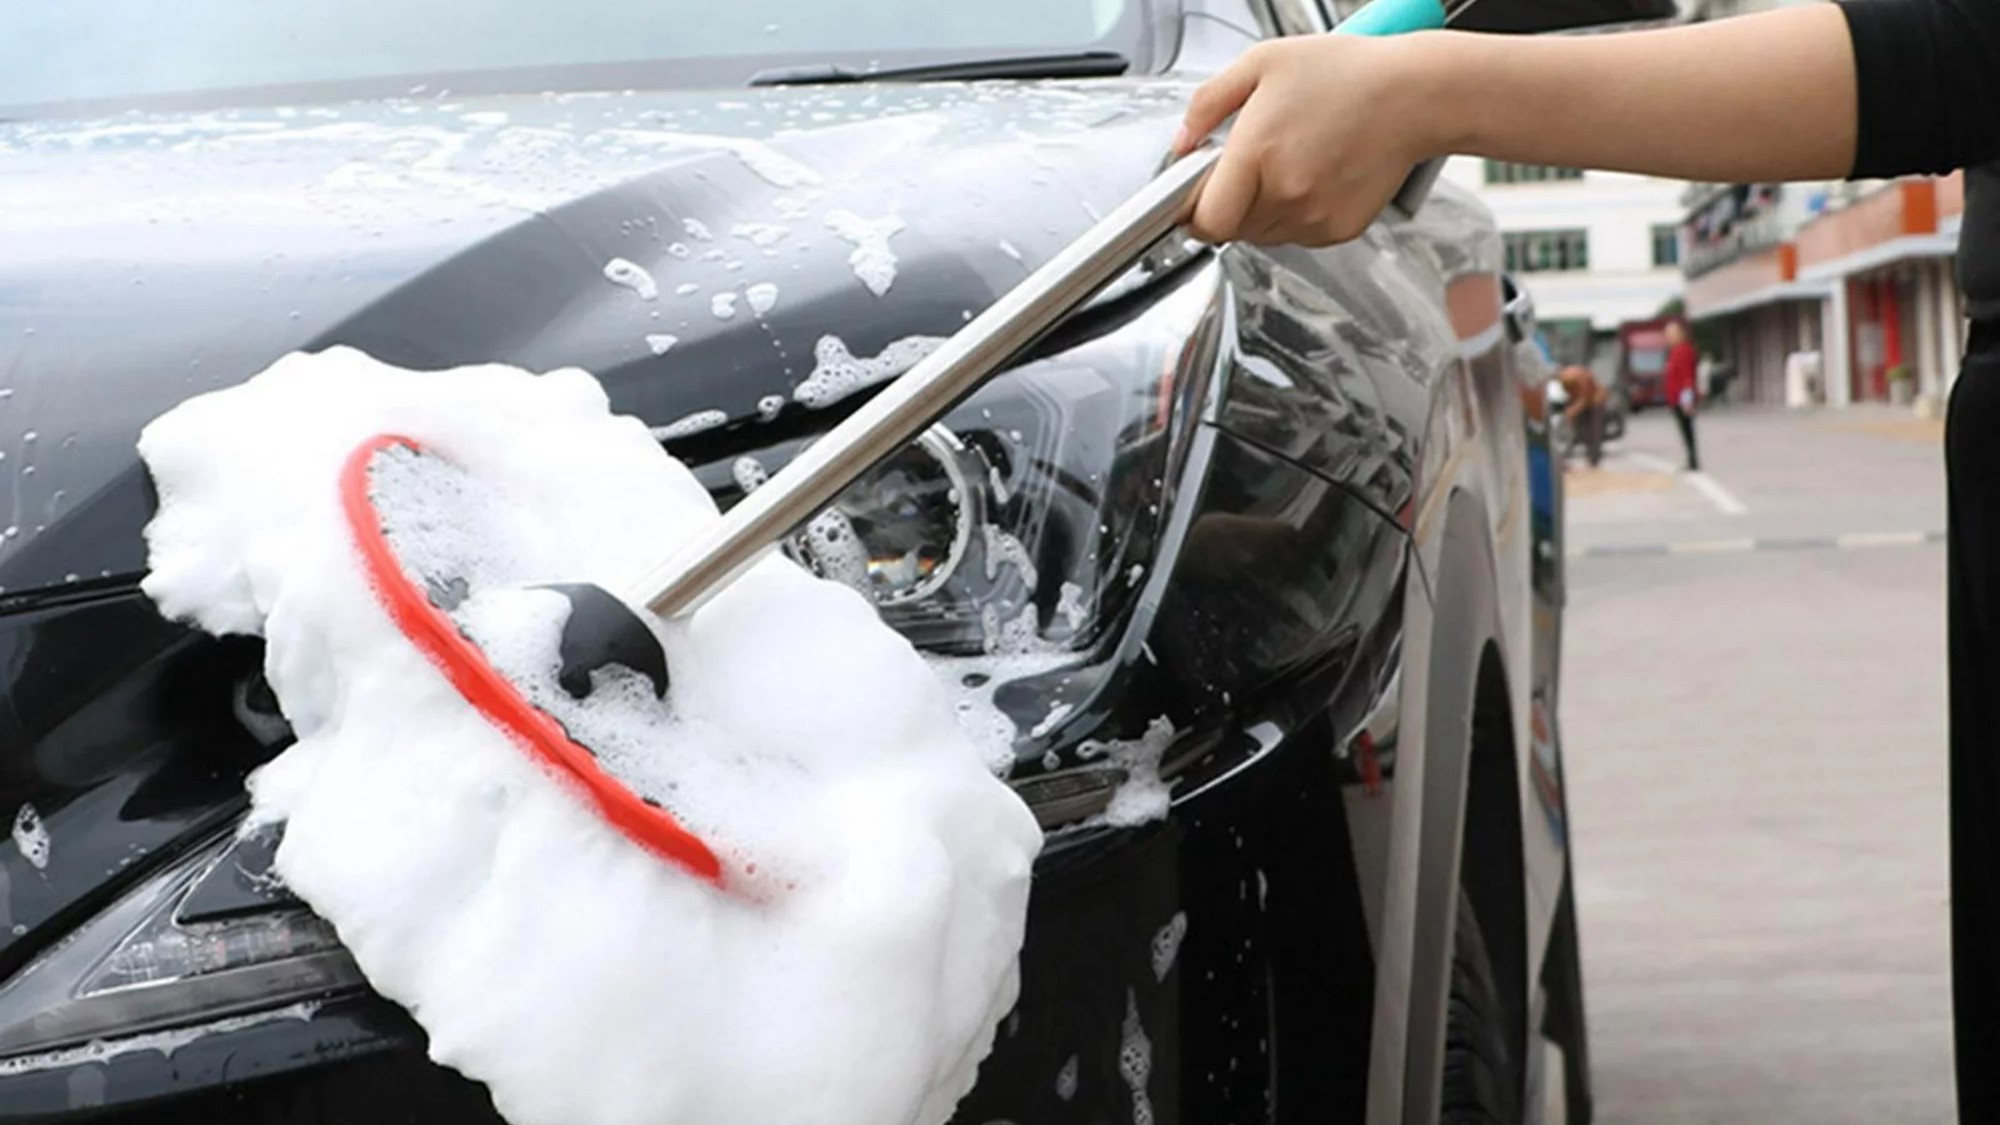 Cepillo para lavado de autos: por qué elegir el ideal y cómo hacerlo